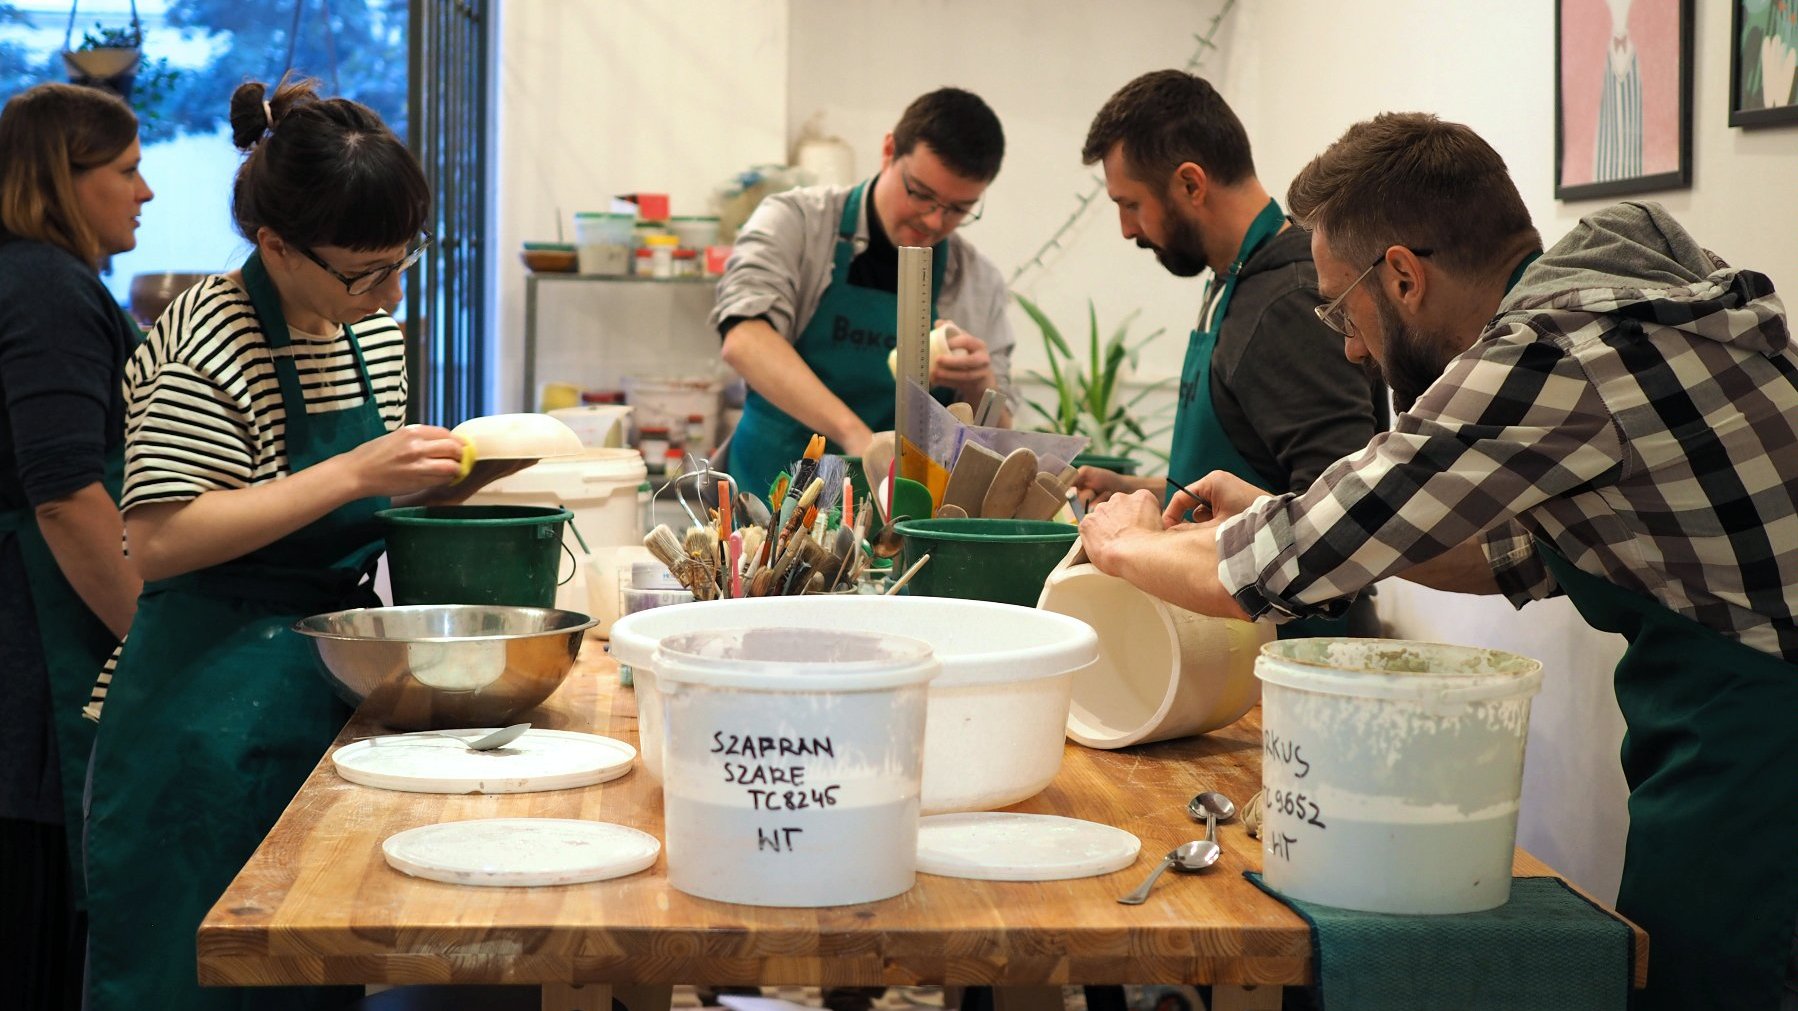 Grupa ludzi przy stole wytwarzająca naczynia ceramiczne